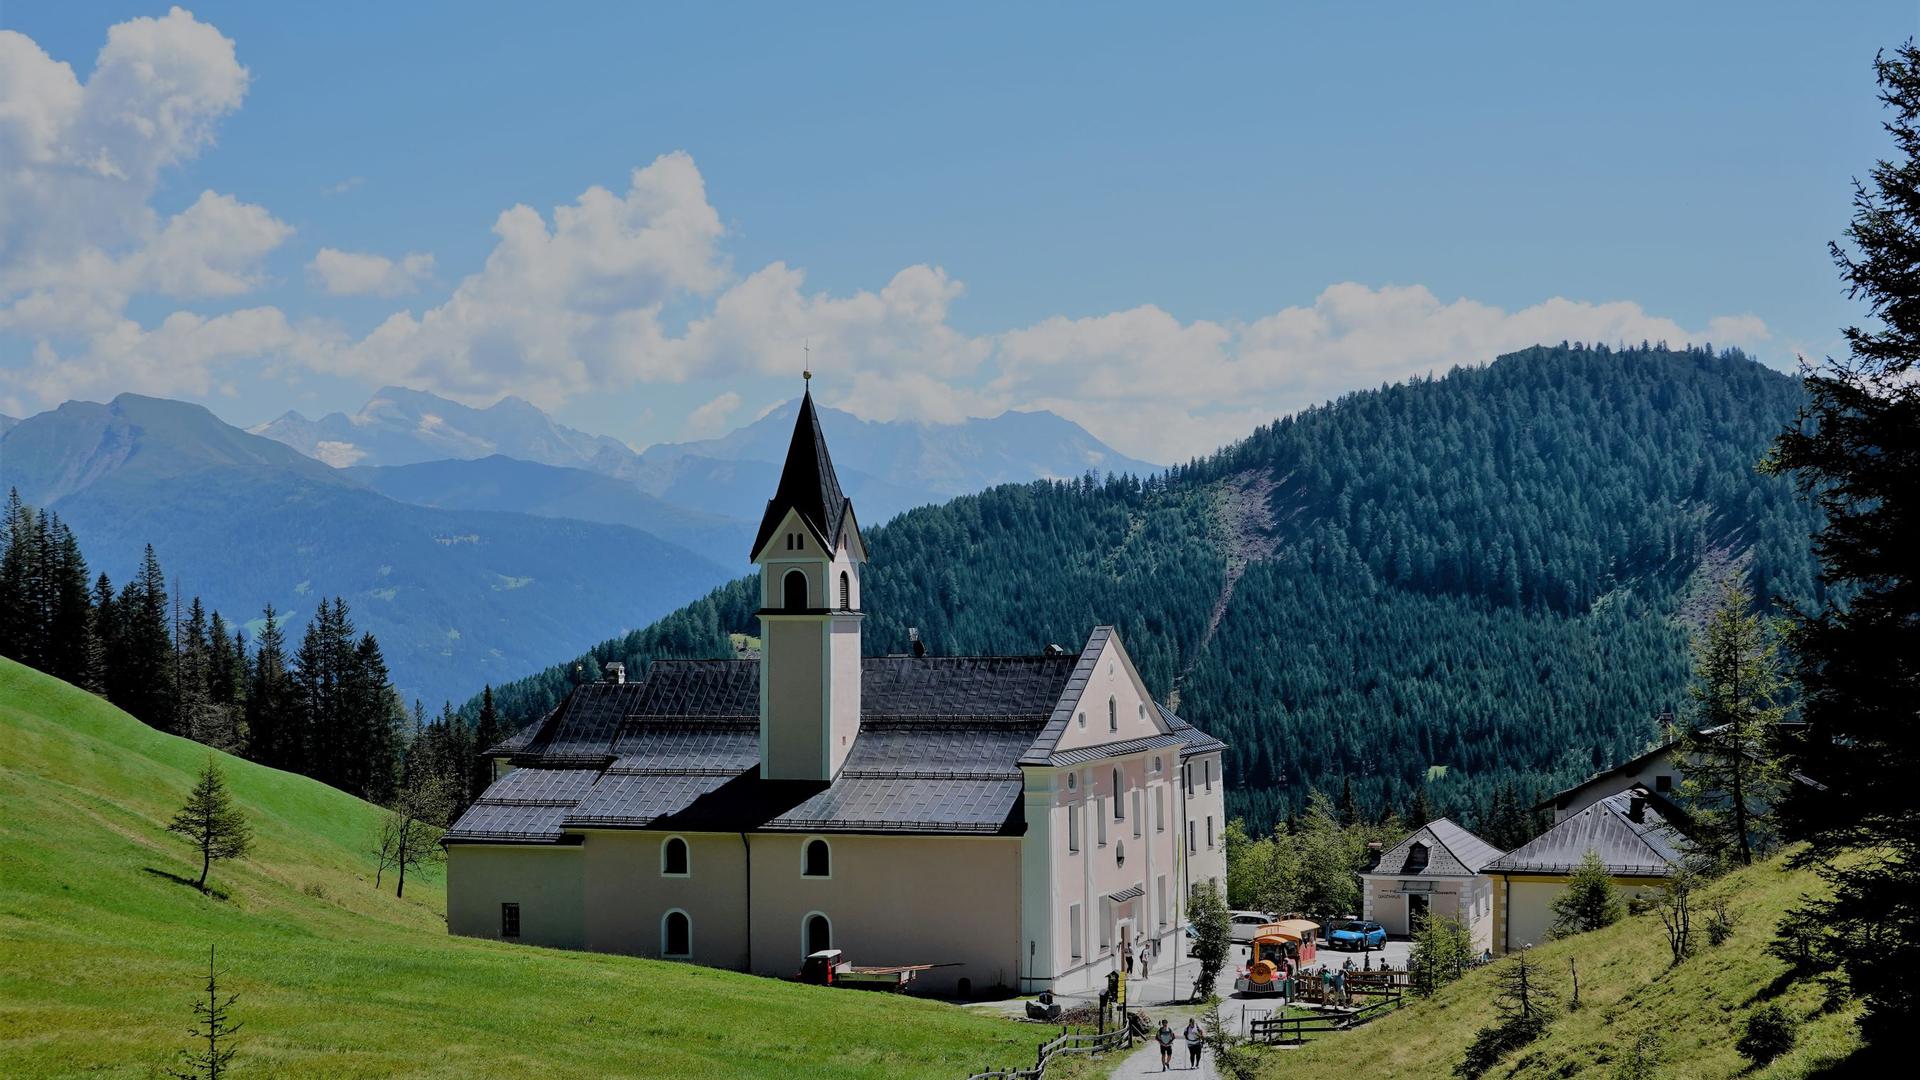 Wallfahrtskloster Maria Waldrast am Fuß des Serles in den Stubaier Alpen von Jürgen Kniestedt aus Bretten.
